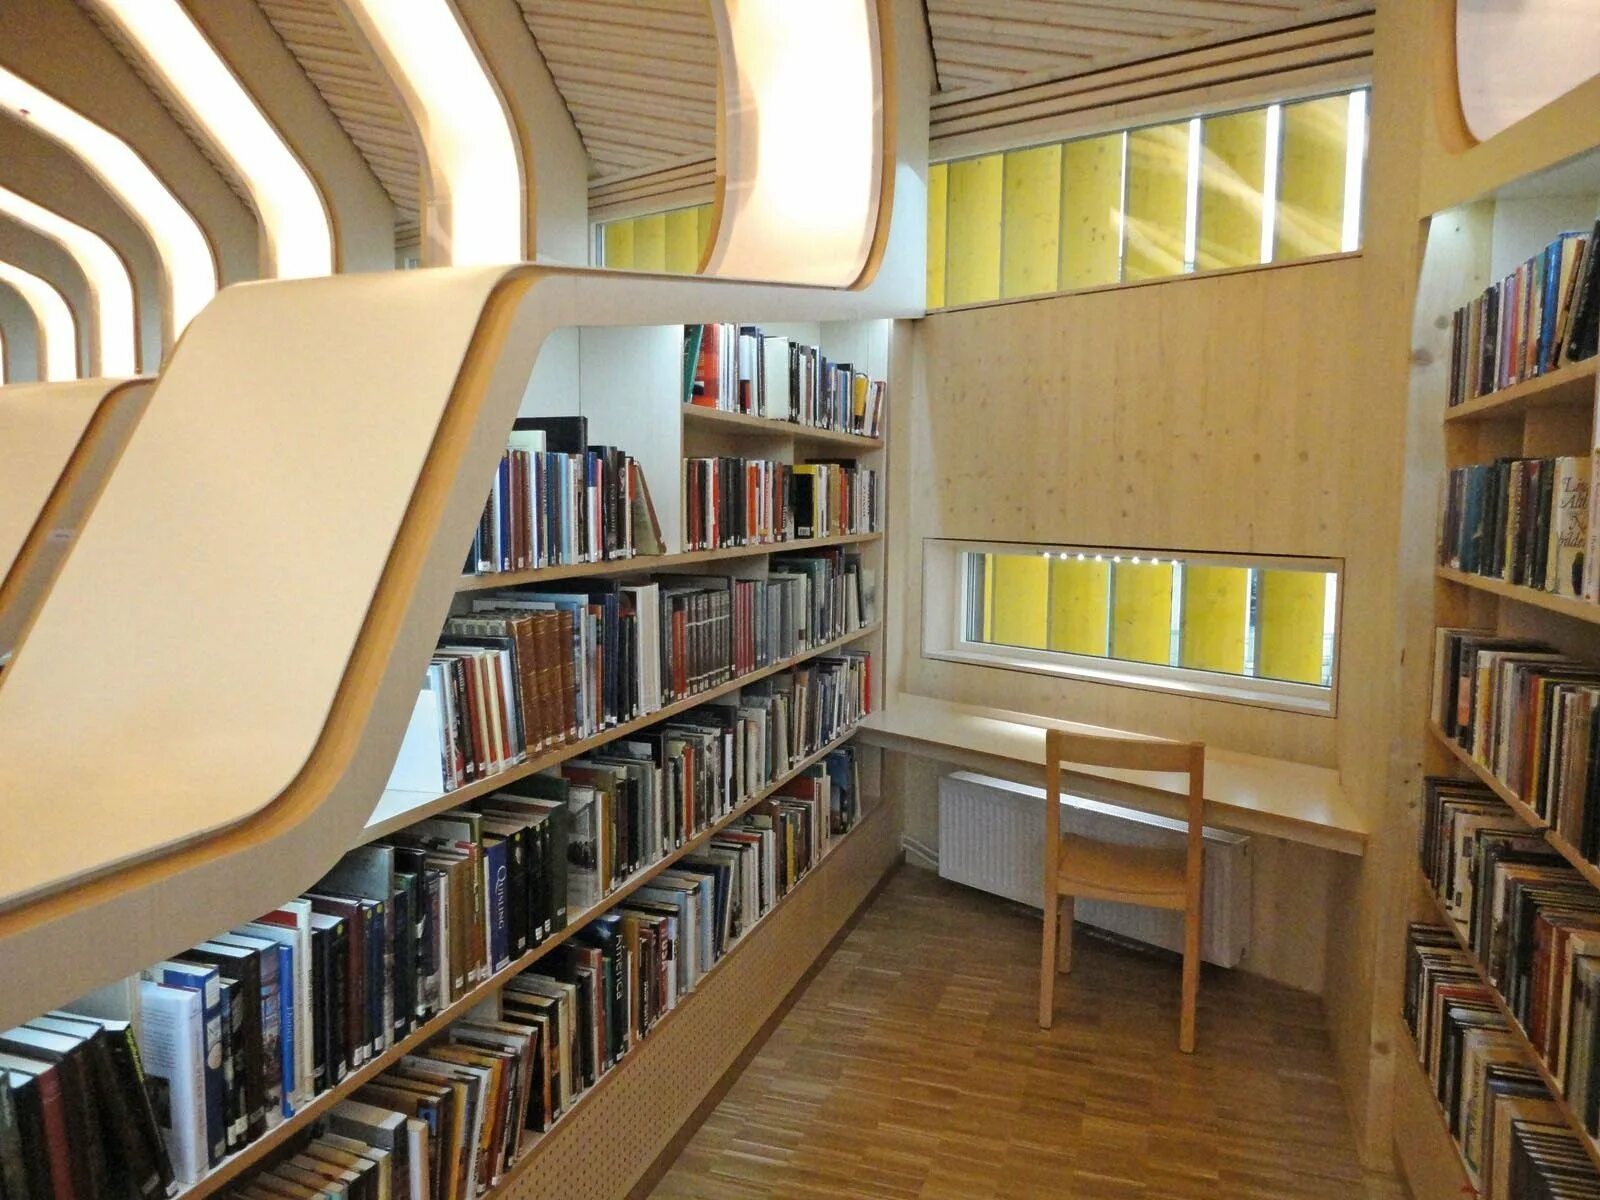 Использовать библиотеку. Современный интерьер читального зала библиотеки. Читальный зал библиотеки интерьер. Современное библиотечное пространство. Современный читальный зал библиотеки.